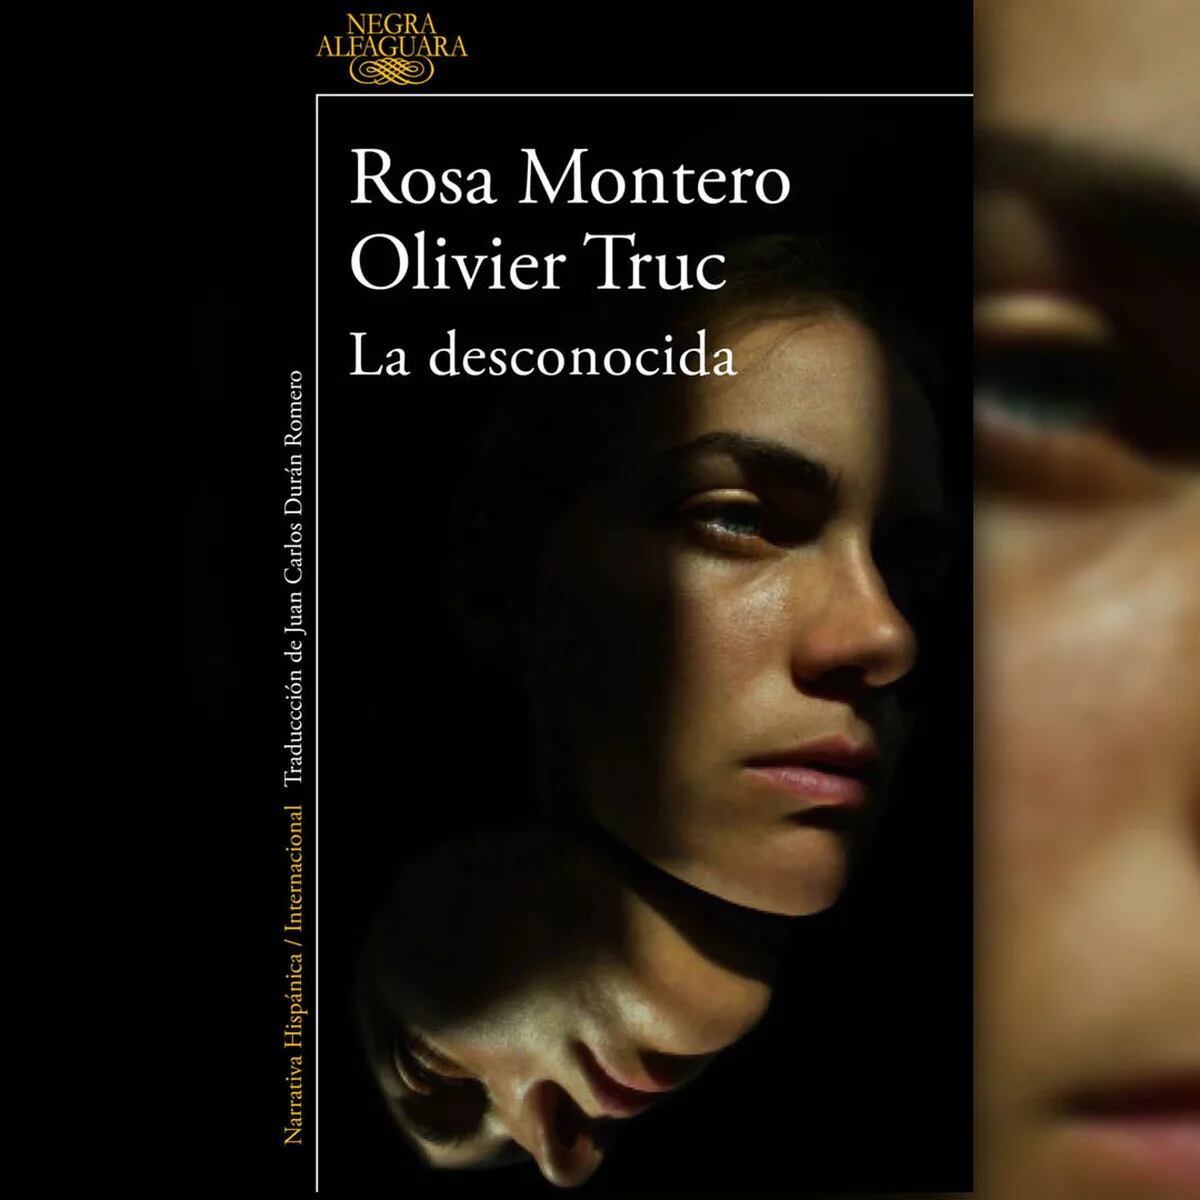 La desconocida by Rosa Montero